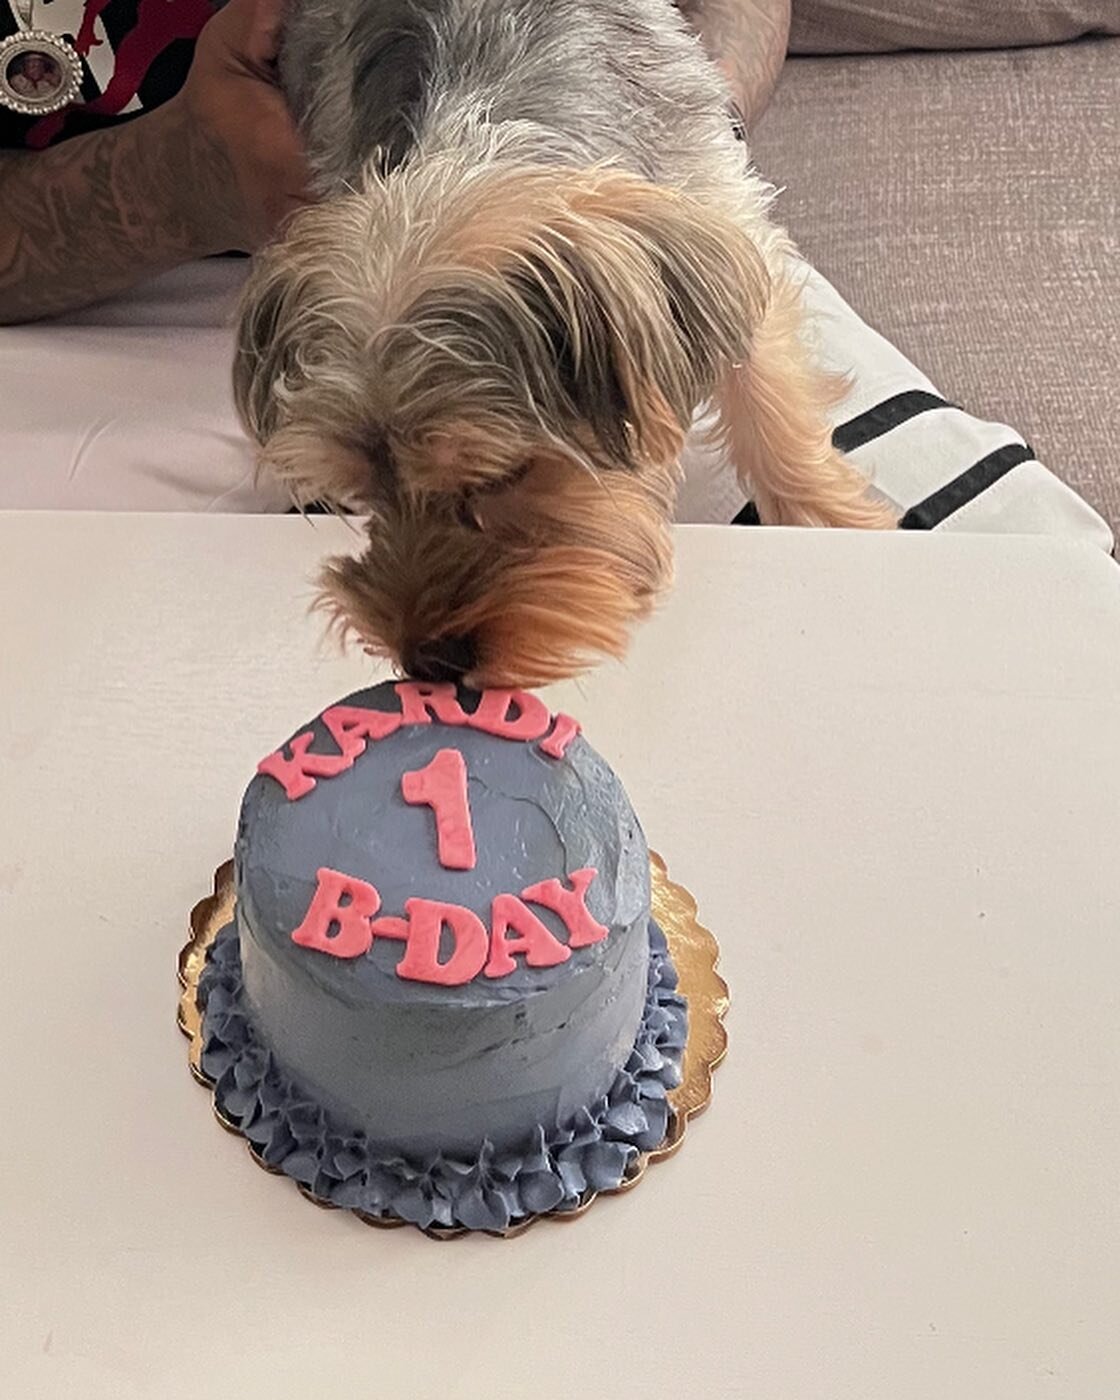 Happy Pawsome 1st B-DAY to our sweet friend Kardi 🐾 #atx #atxdogs #atxdog #atxdogstagram #dogsofinstagram #dogsofzilkerpark #dogtreats #dogcakes #dogbirthday #birthdaydog #specialdog #petsofinstagram #petstagram #petsagram #cattreats #cats
#dogsitte